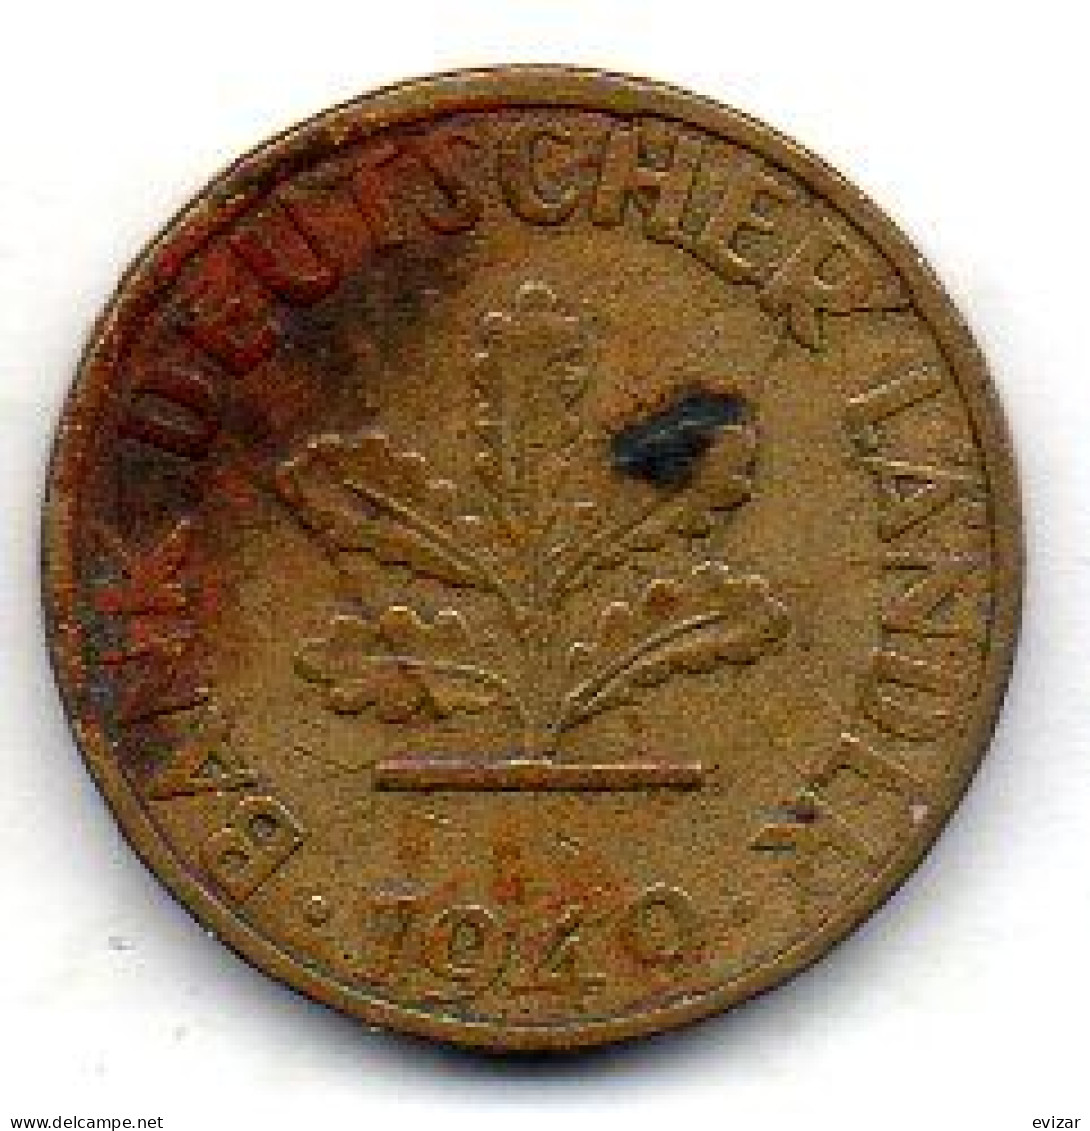 GERMANY - FEDERAL REPUBLIC, 5 Pfennig, Brass, Year 1949-G, KM # 102 - 5 Pfennig